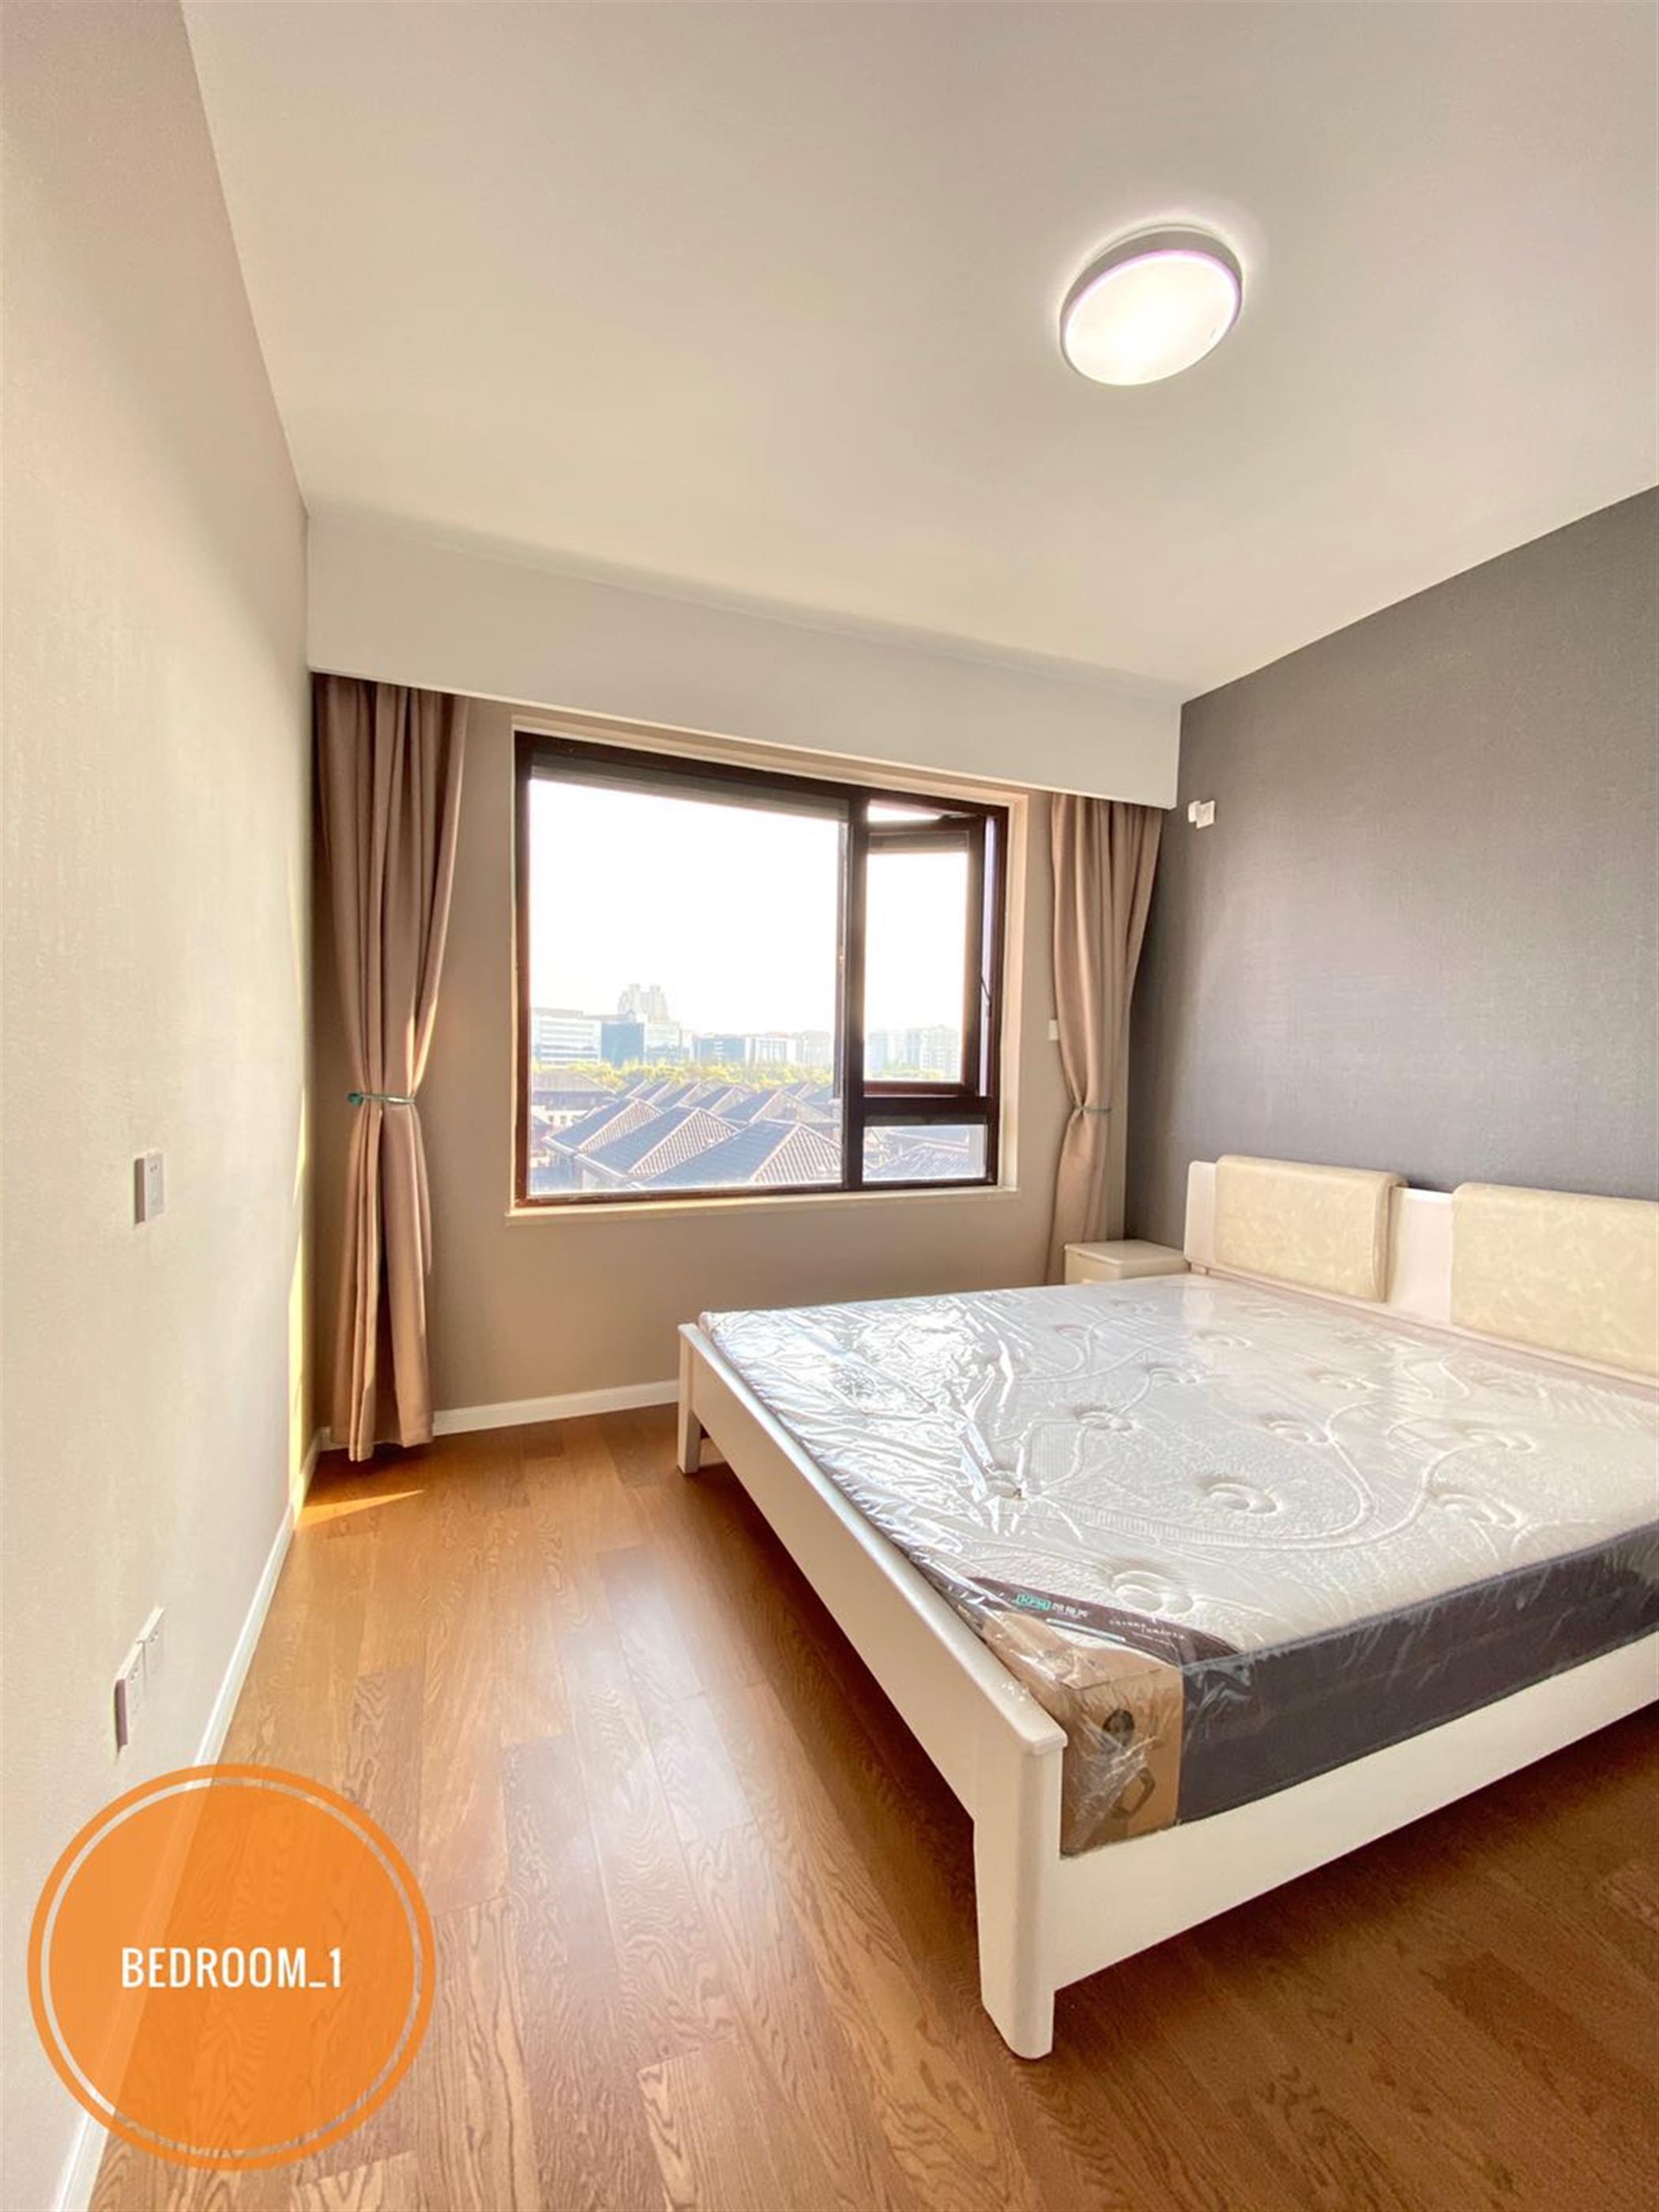 Bedroom Brand New Sunny Apartment nr LN 10 for Rent in Hongkou Shanghai